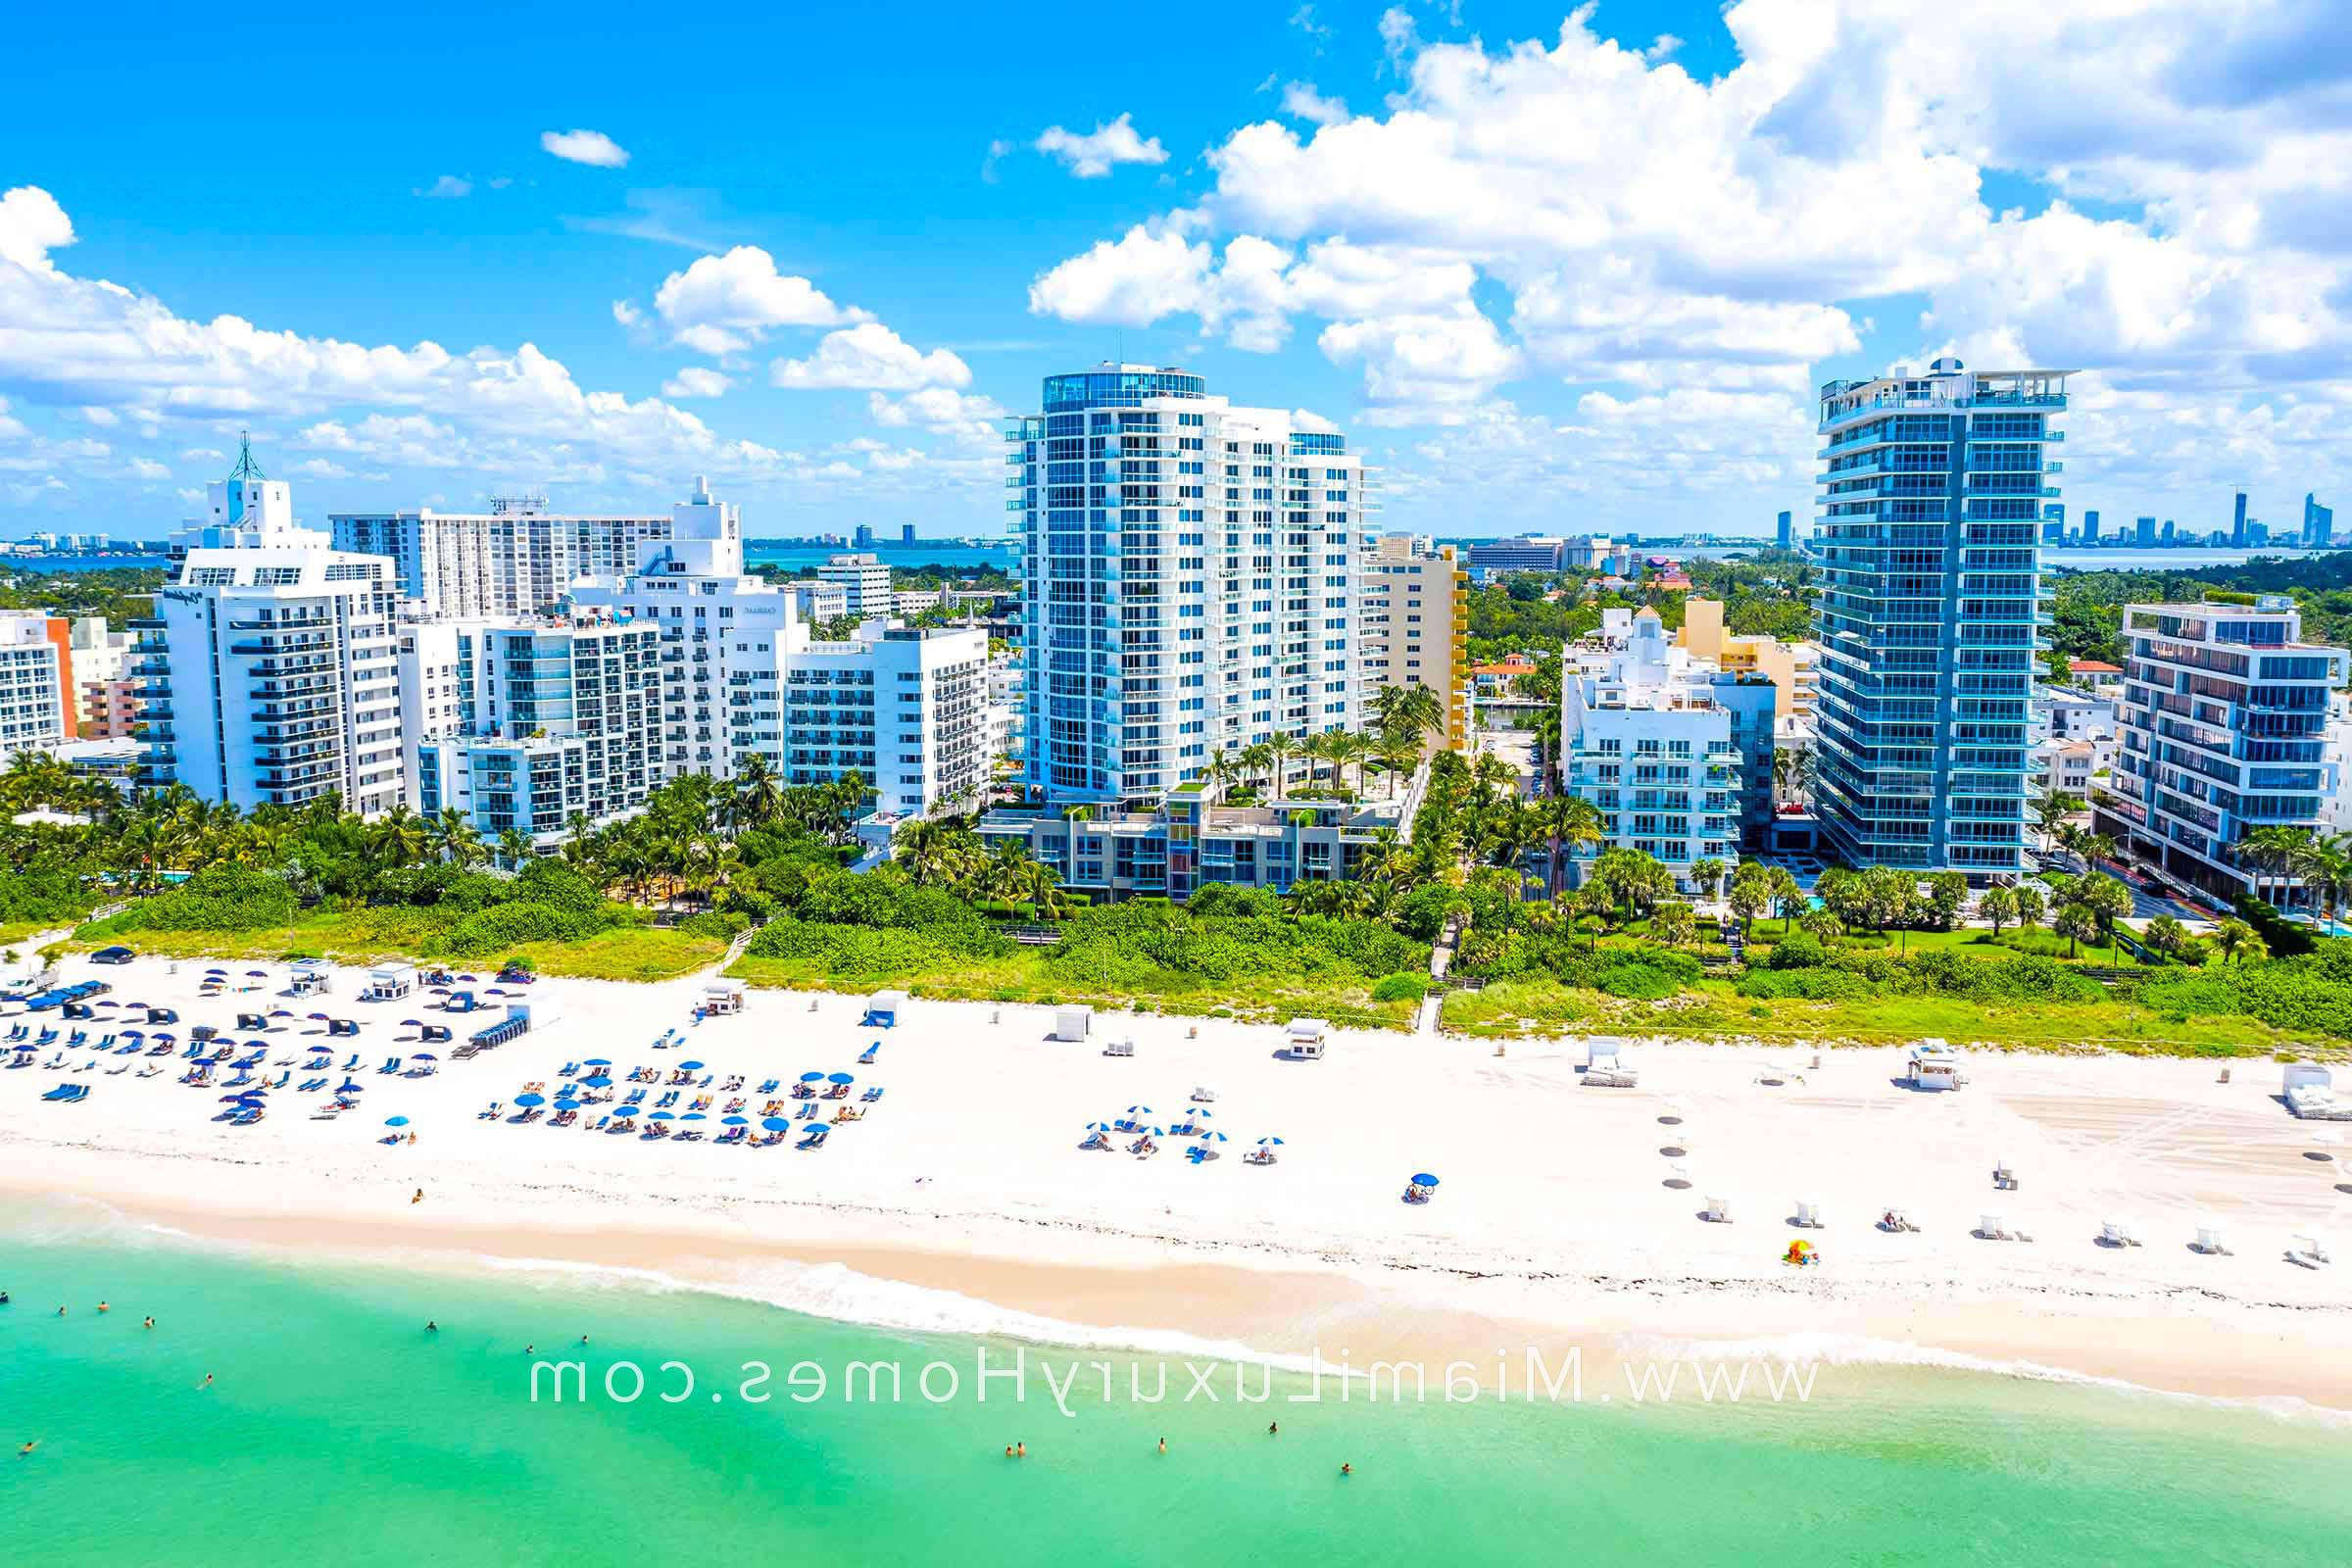 Aerial View of Mosaic Miami Beach